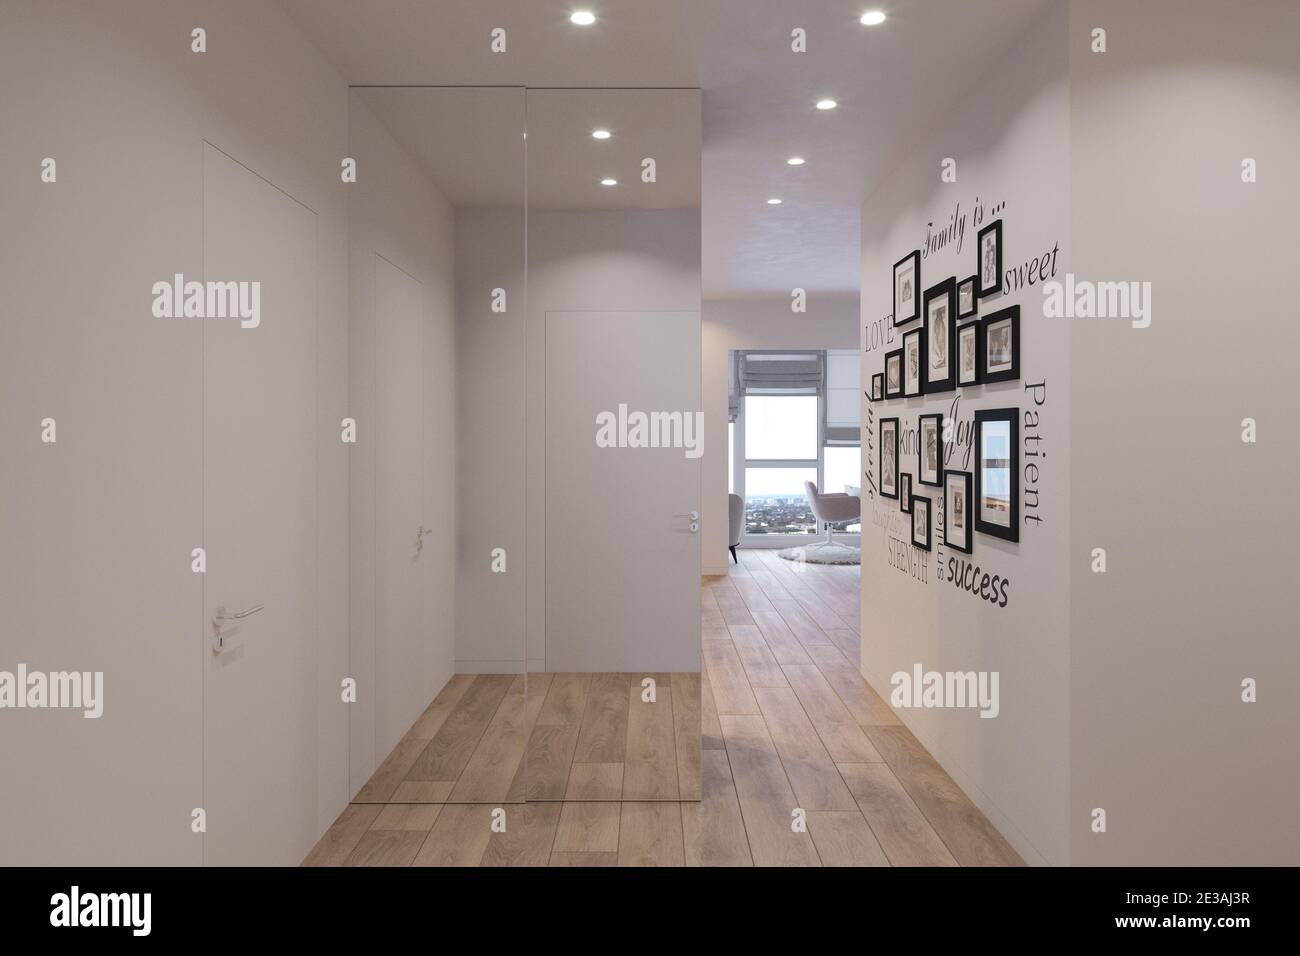 visualizzazione in 3d dell'interno della hall, appartamento cittadino Foto Stock